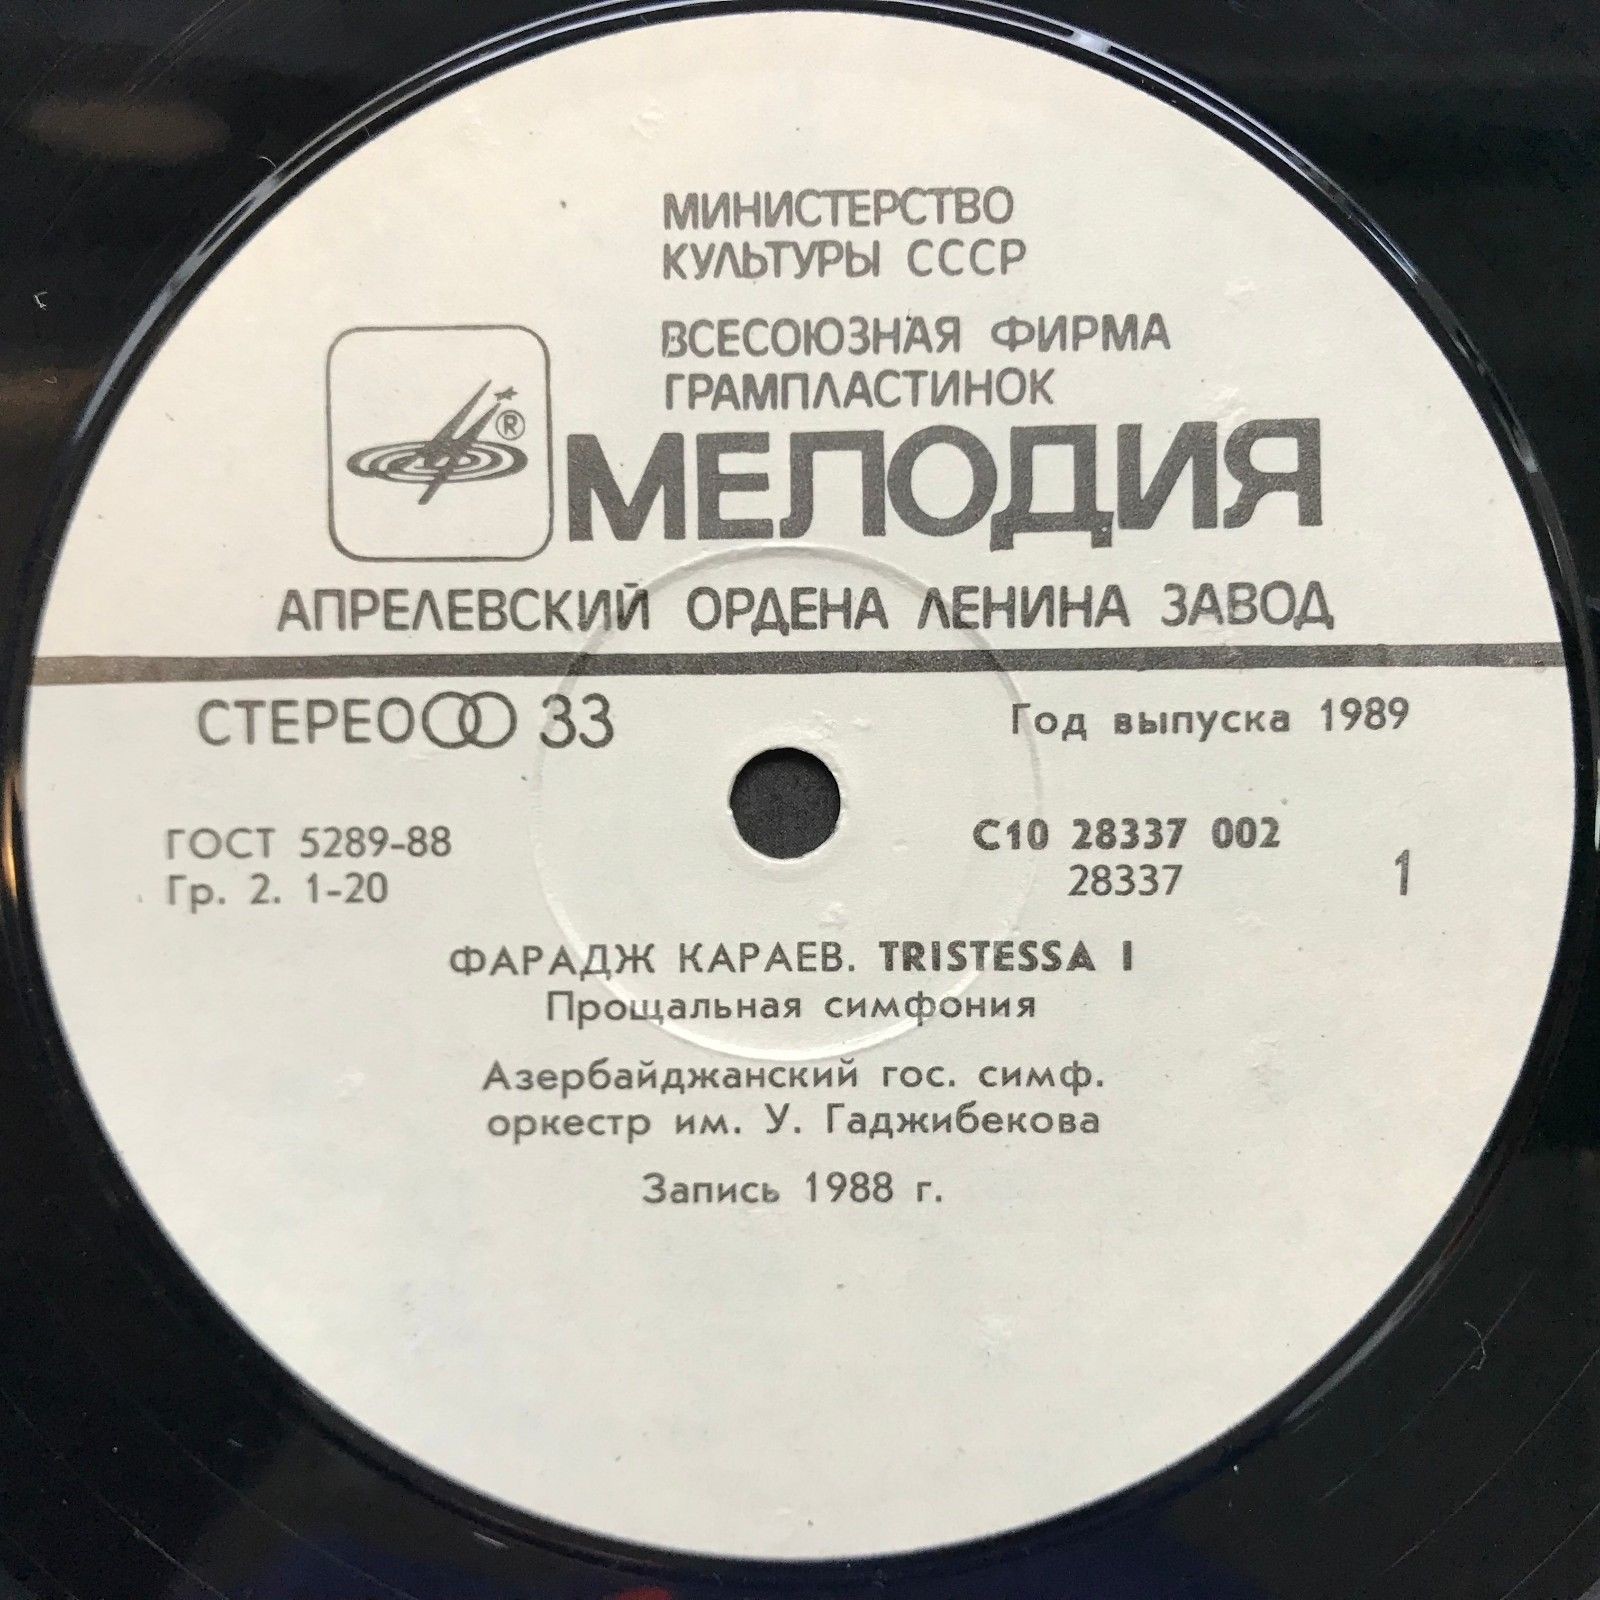 Фарадж КАРАЕВ (1943): "Tristessa I" (Прощальная симфония).